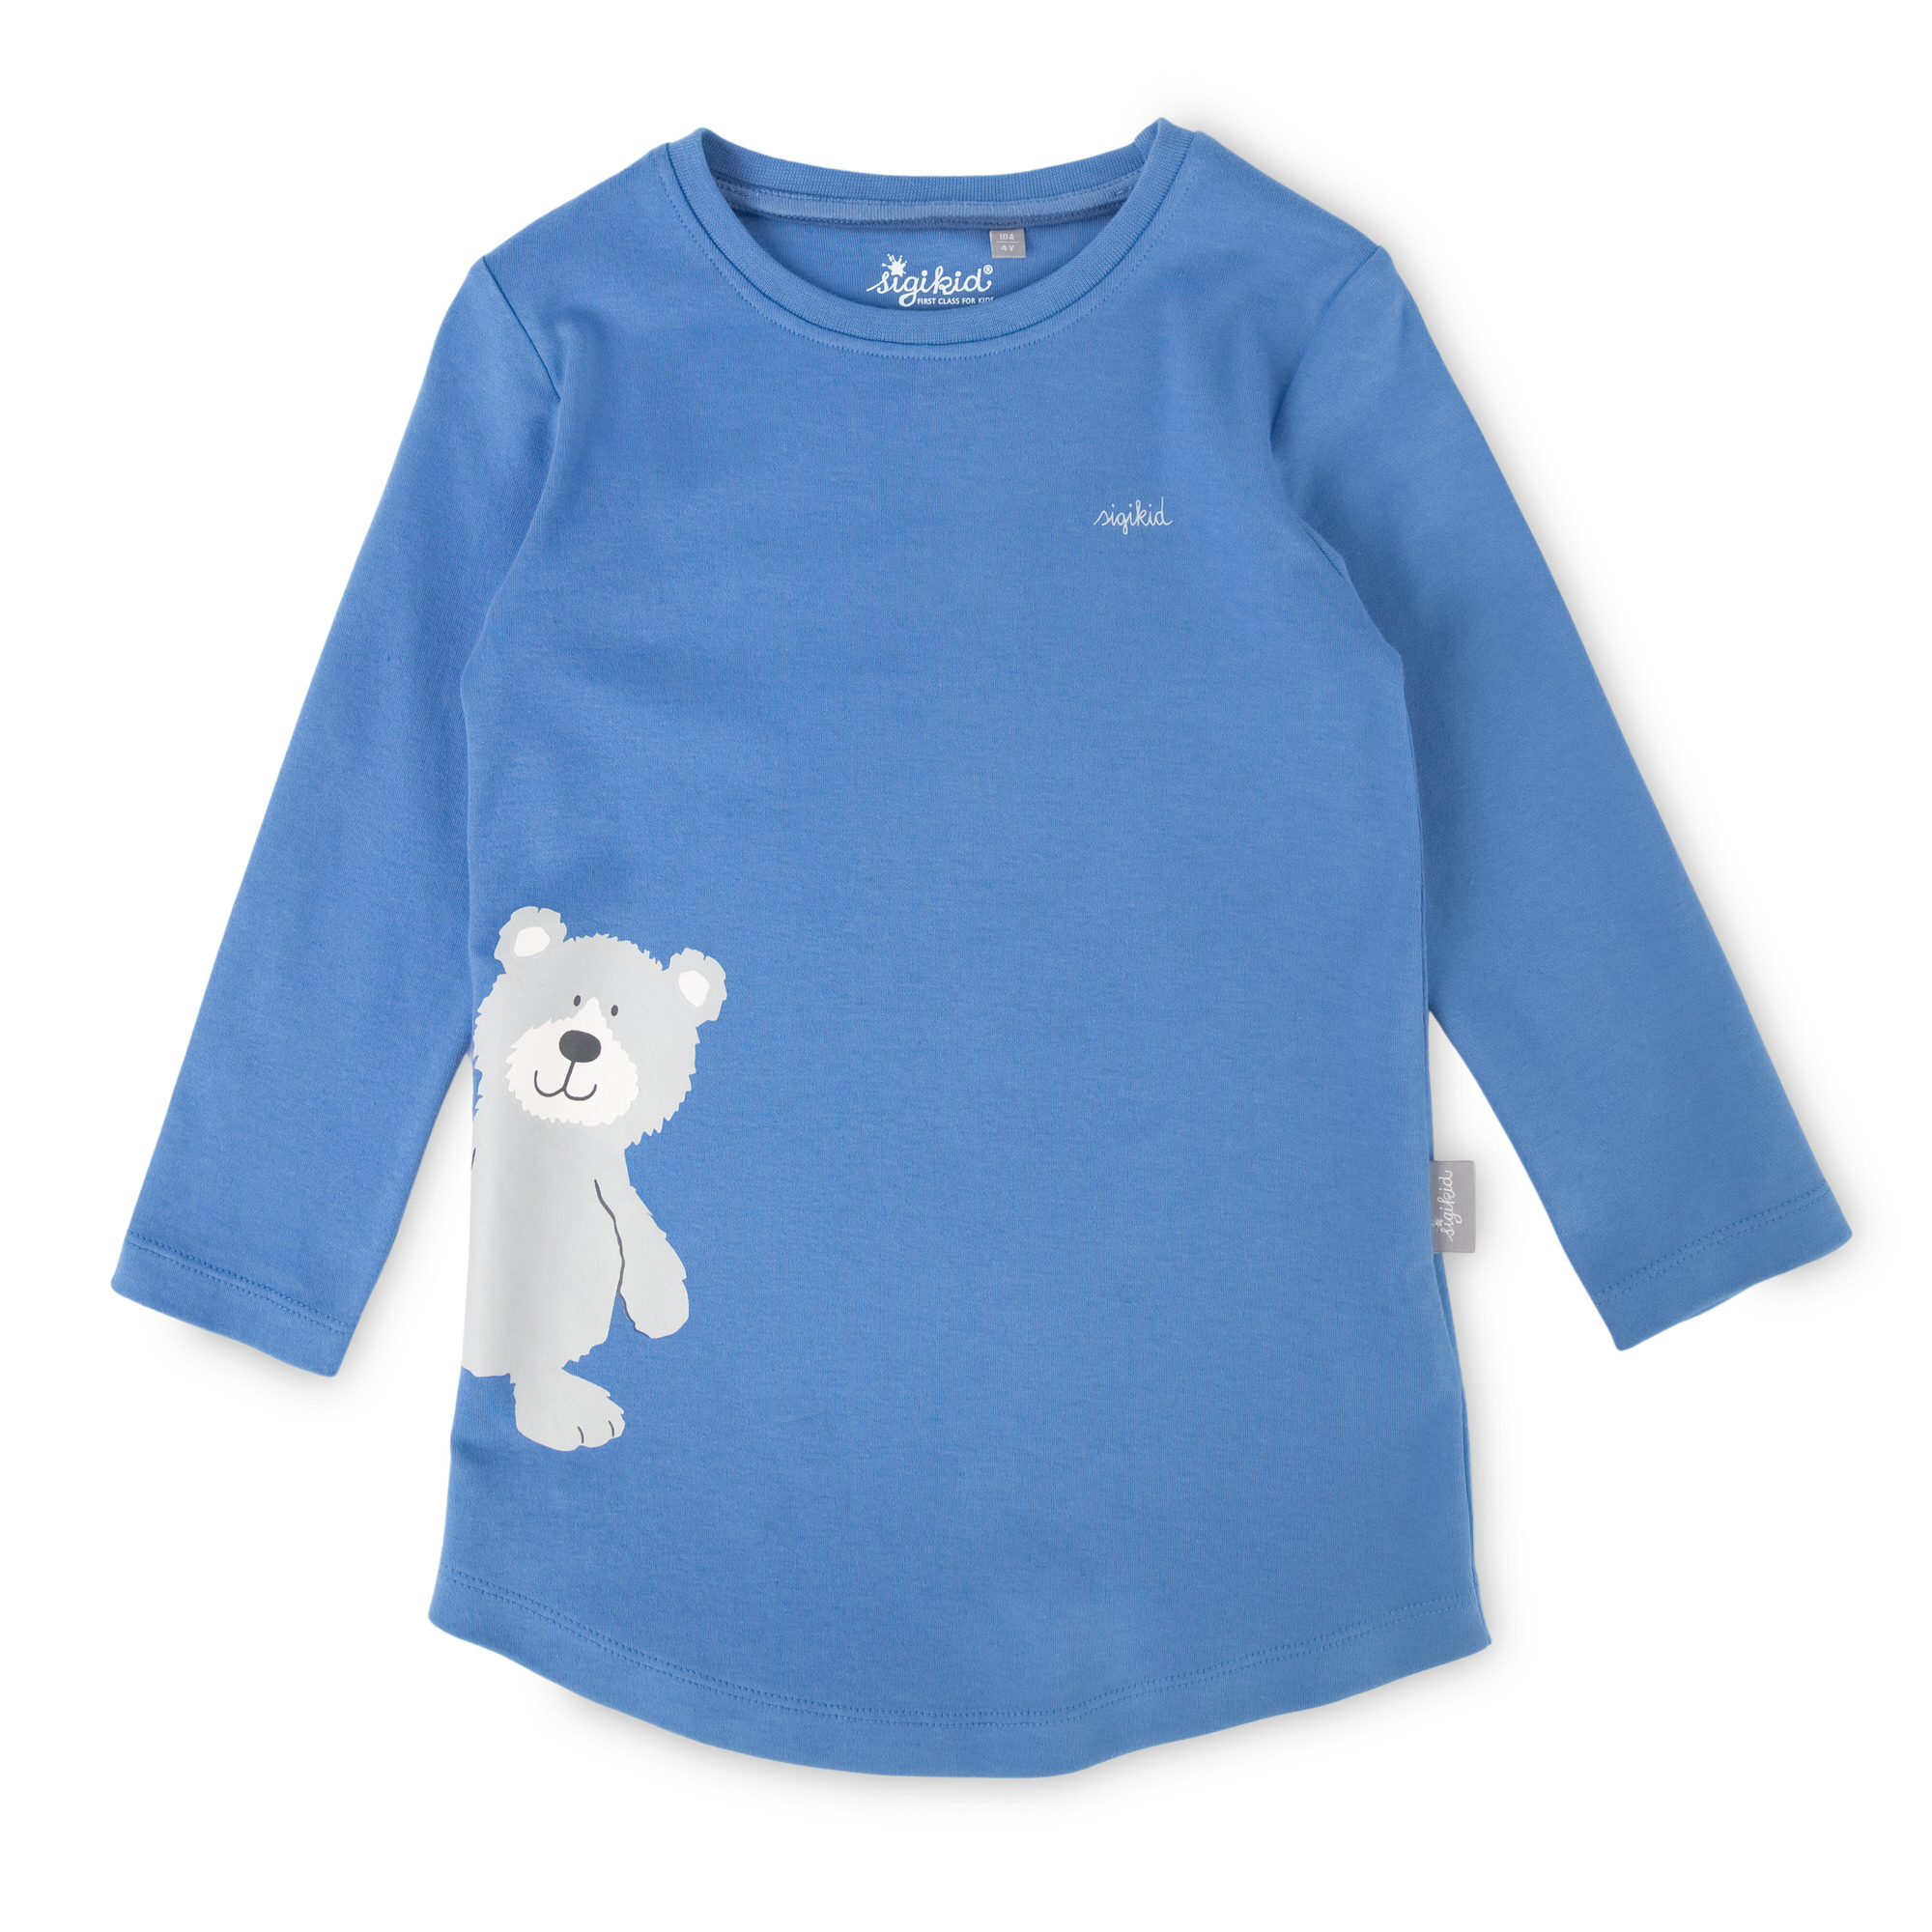 Kinder Schlafanzug Bär, blau